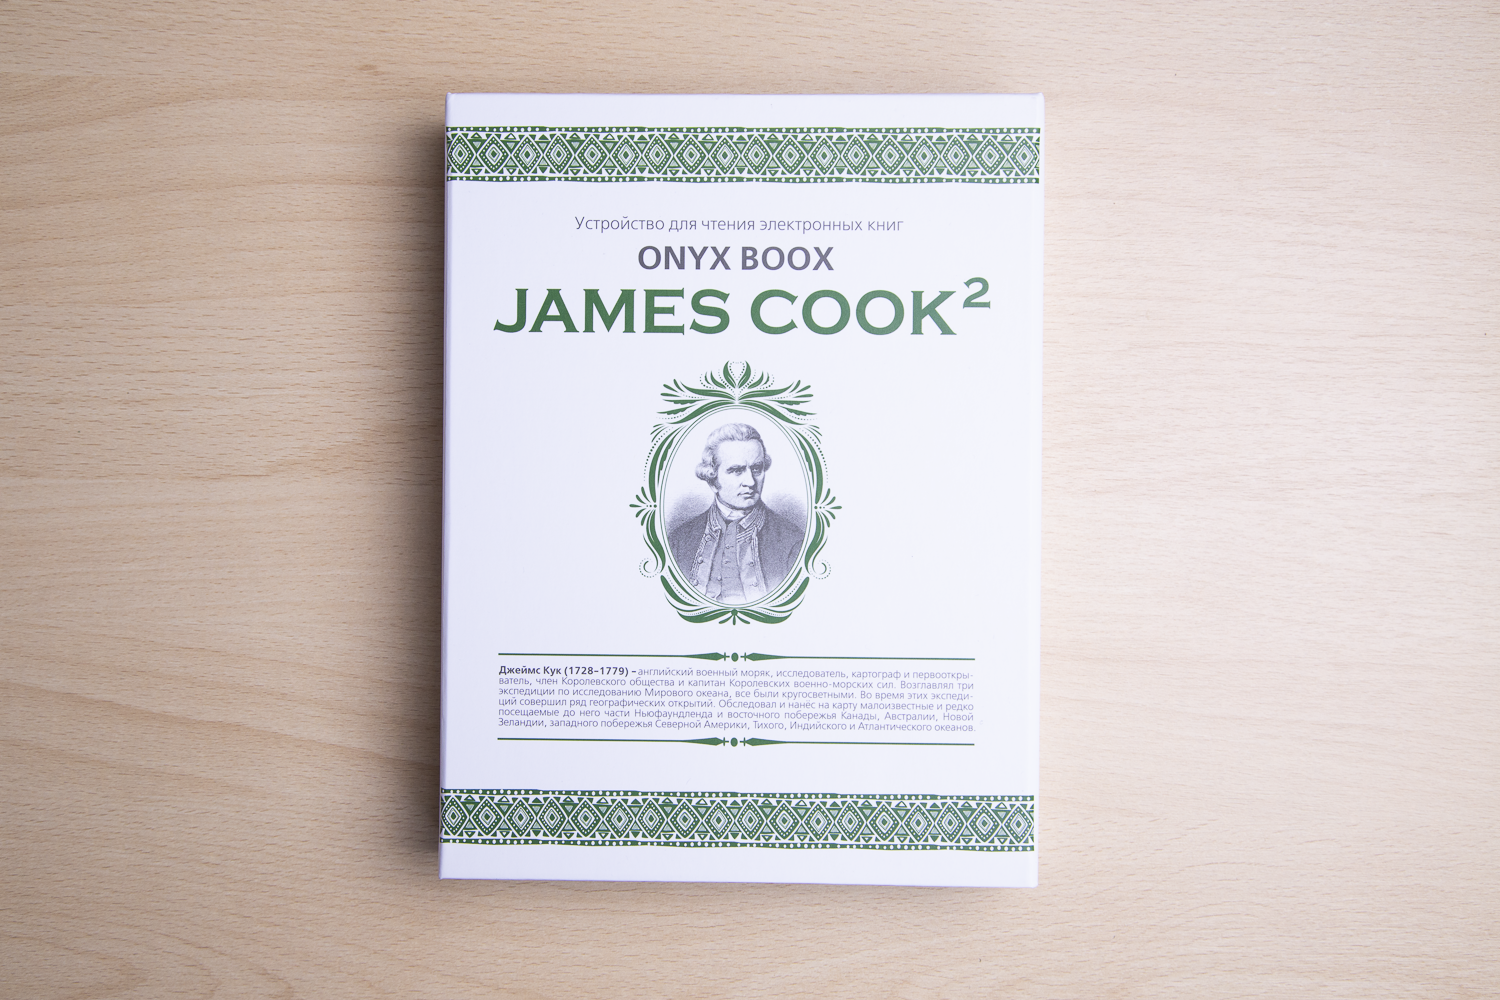 Вокруг света с электронной книгой: обзор ONYX BOOX James Cook 2 - 2